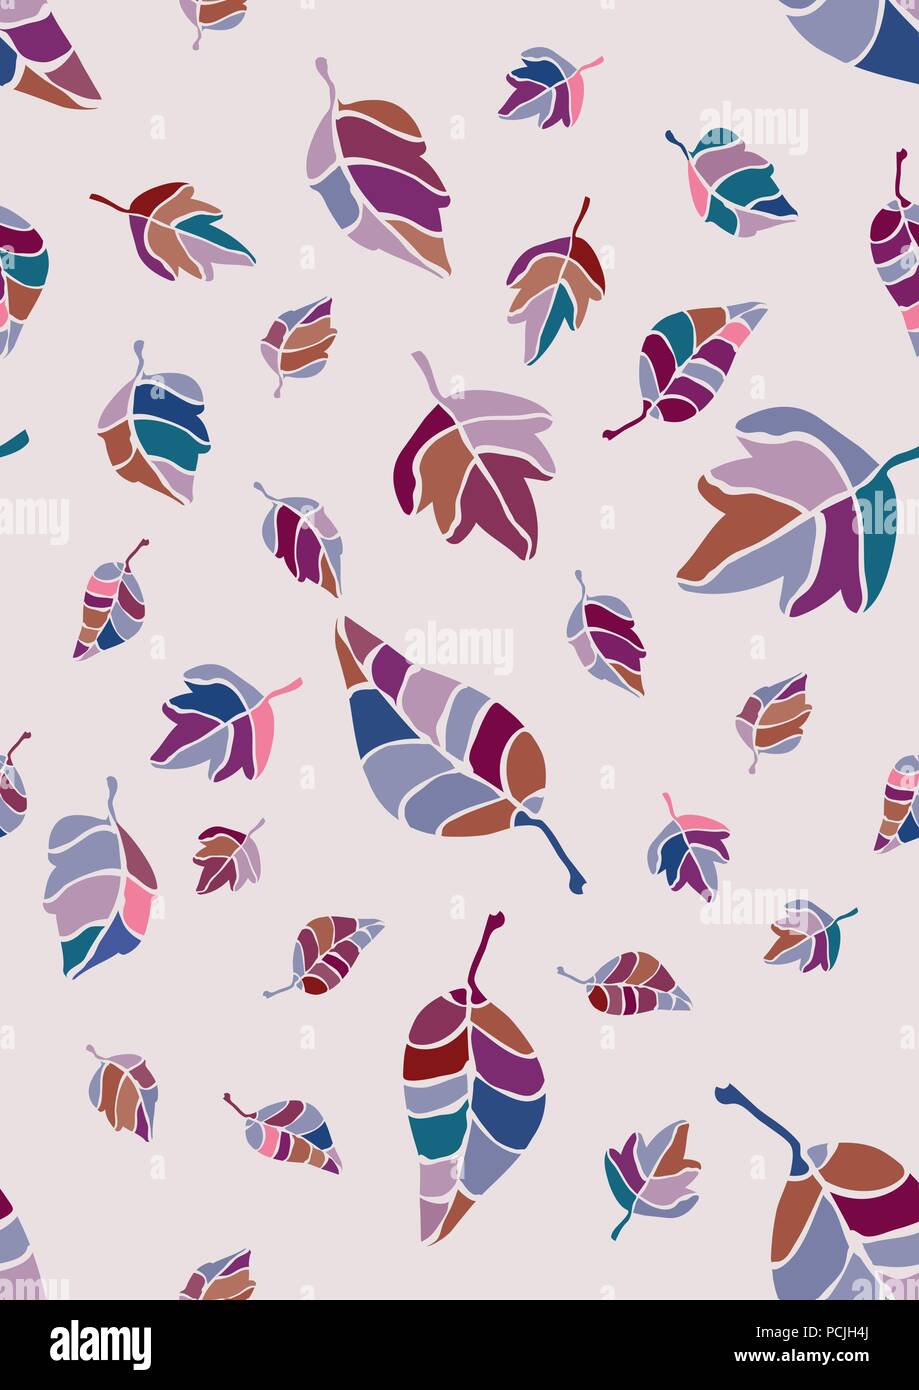 Vector patrón, textura de superficie con multicolor (azul, rosa Claret, púrpura, marrón) la caída de las hojas, follaje de luz de fondo rosa, beige Ilustración del Vector